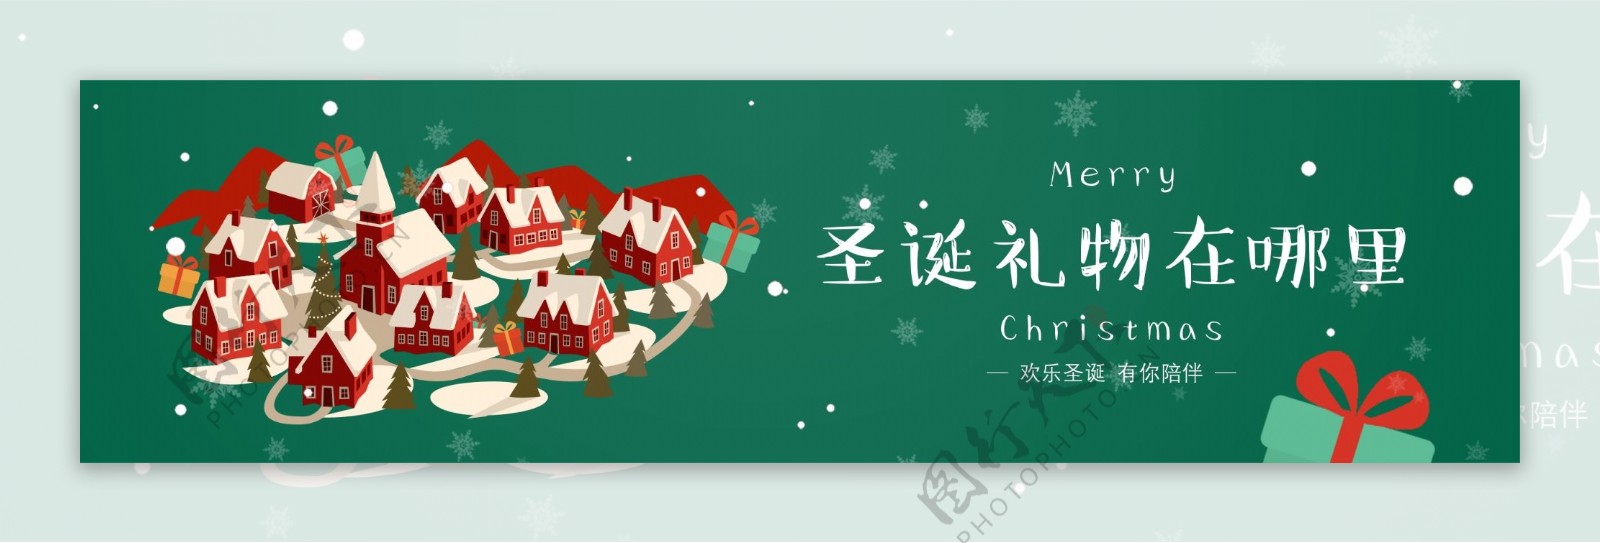 绿色背景圣诞节村庄礼物展板海报设计